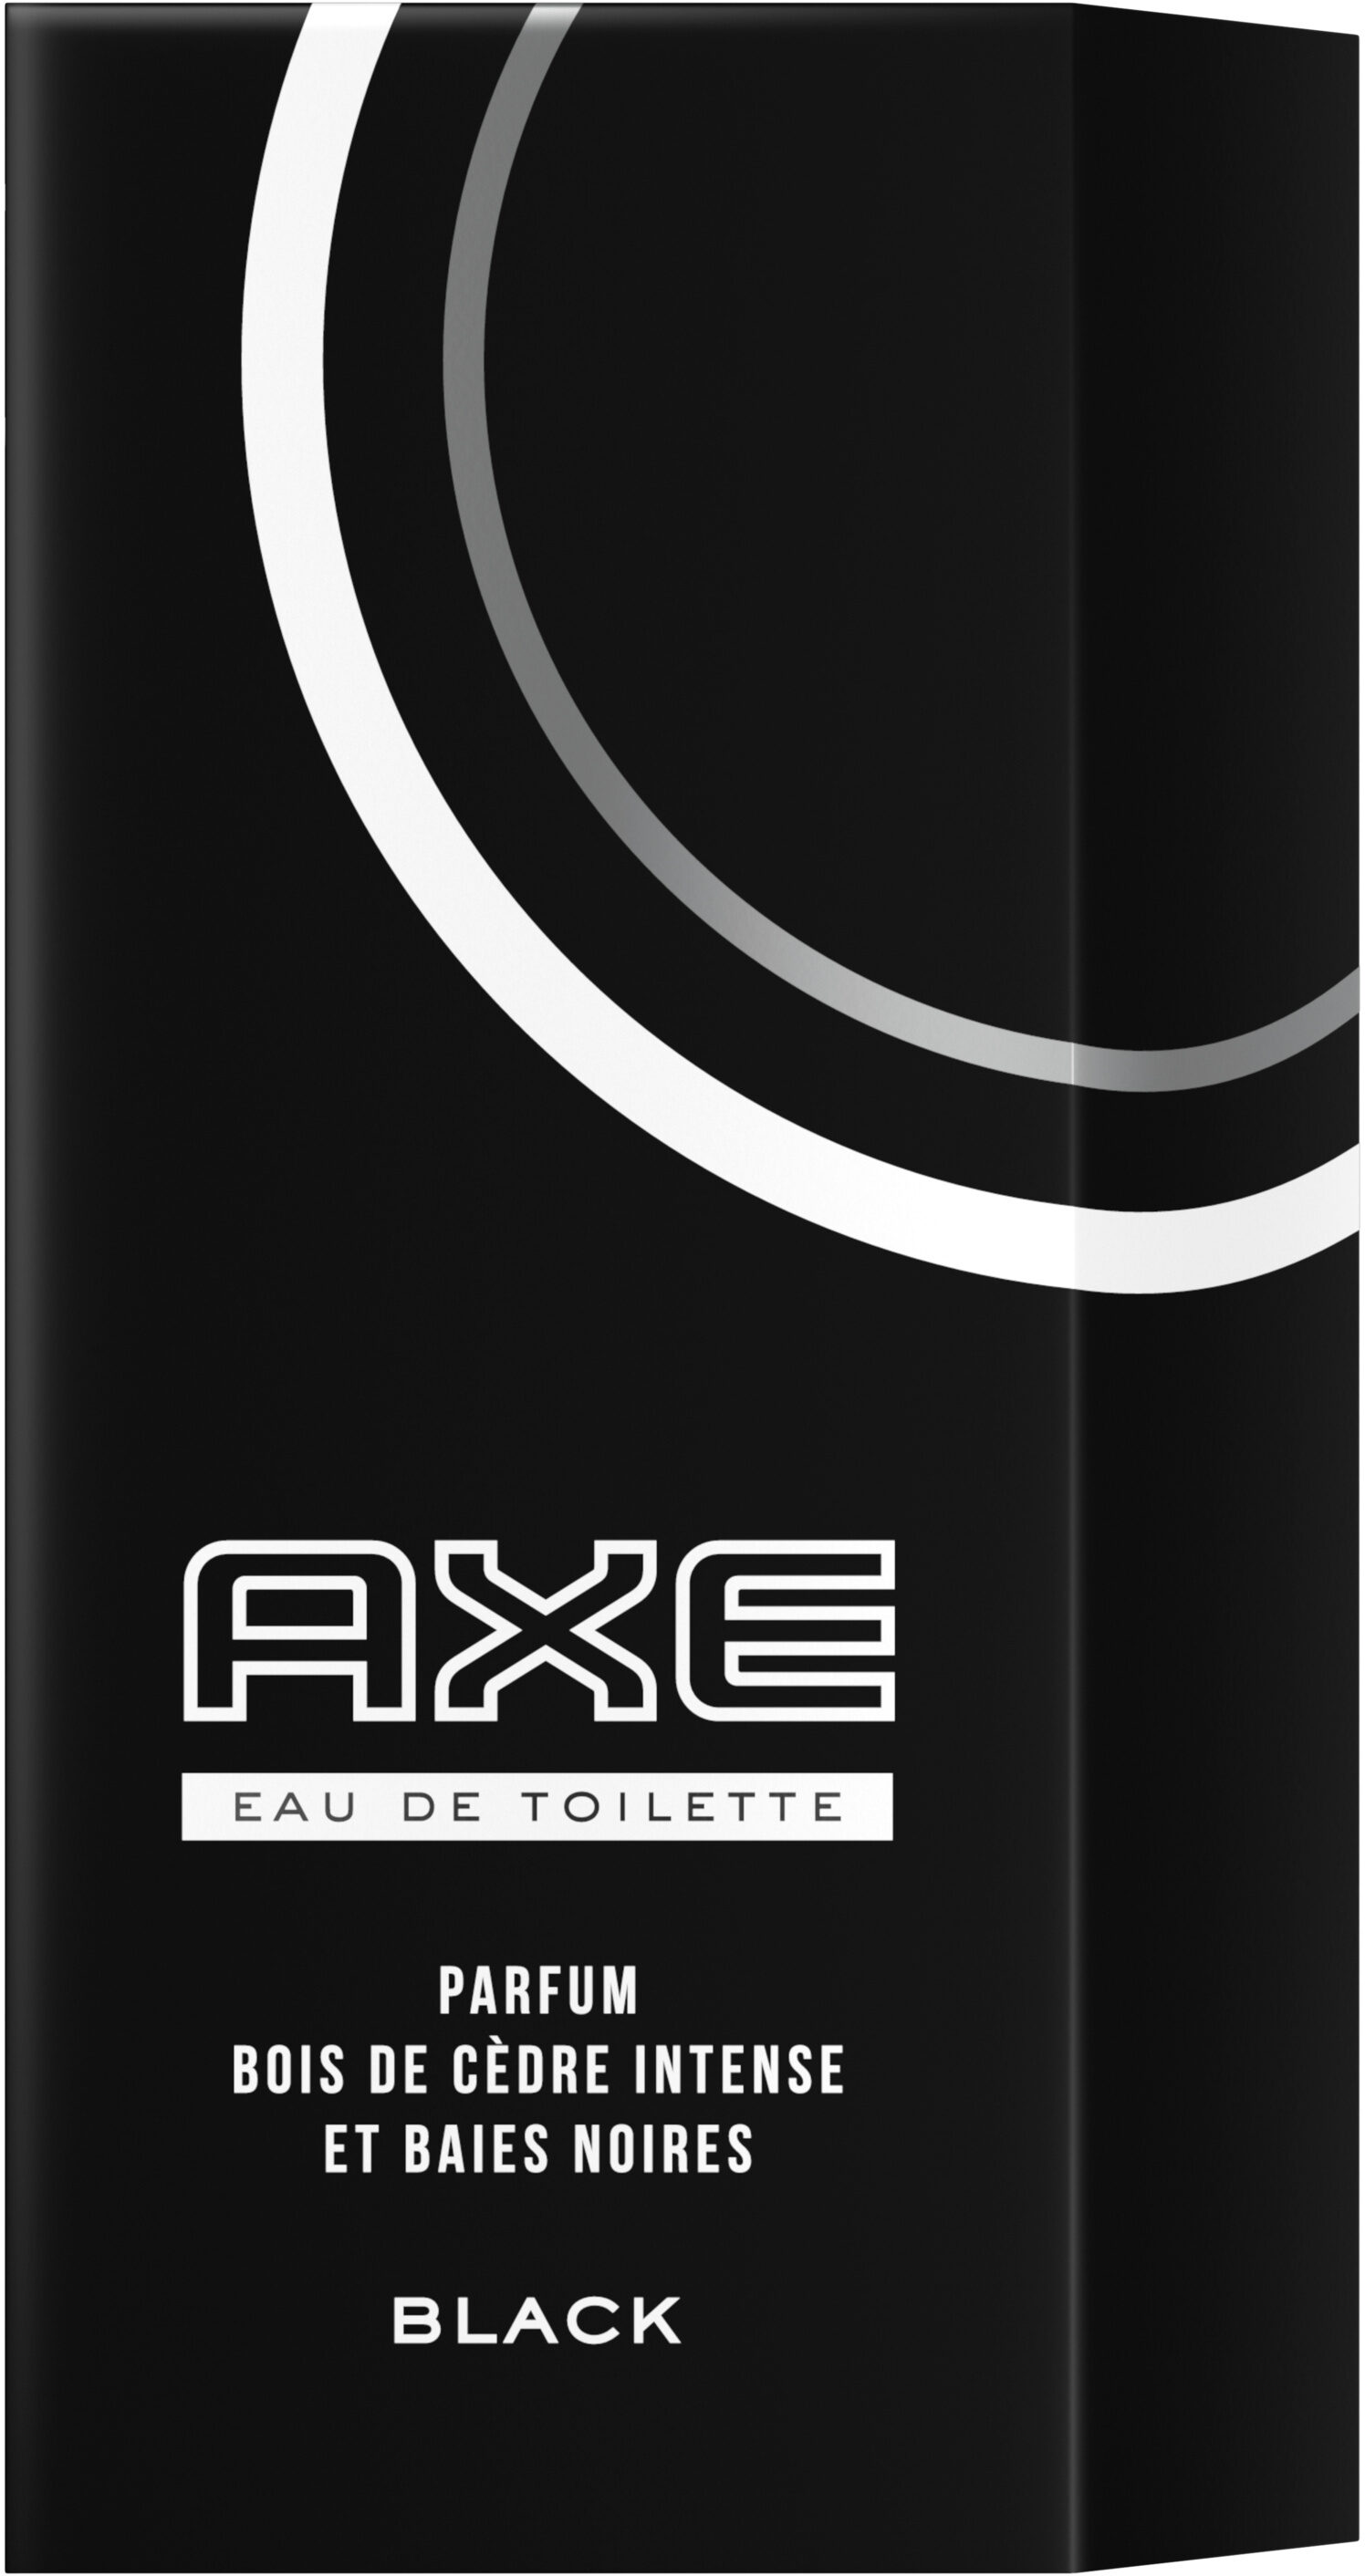 AXE Eau De Toilette Black 100ml - Product - fr